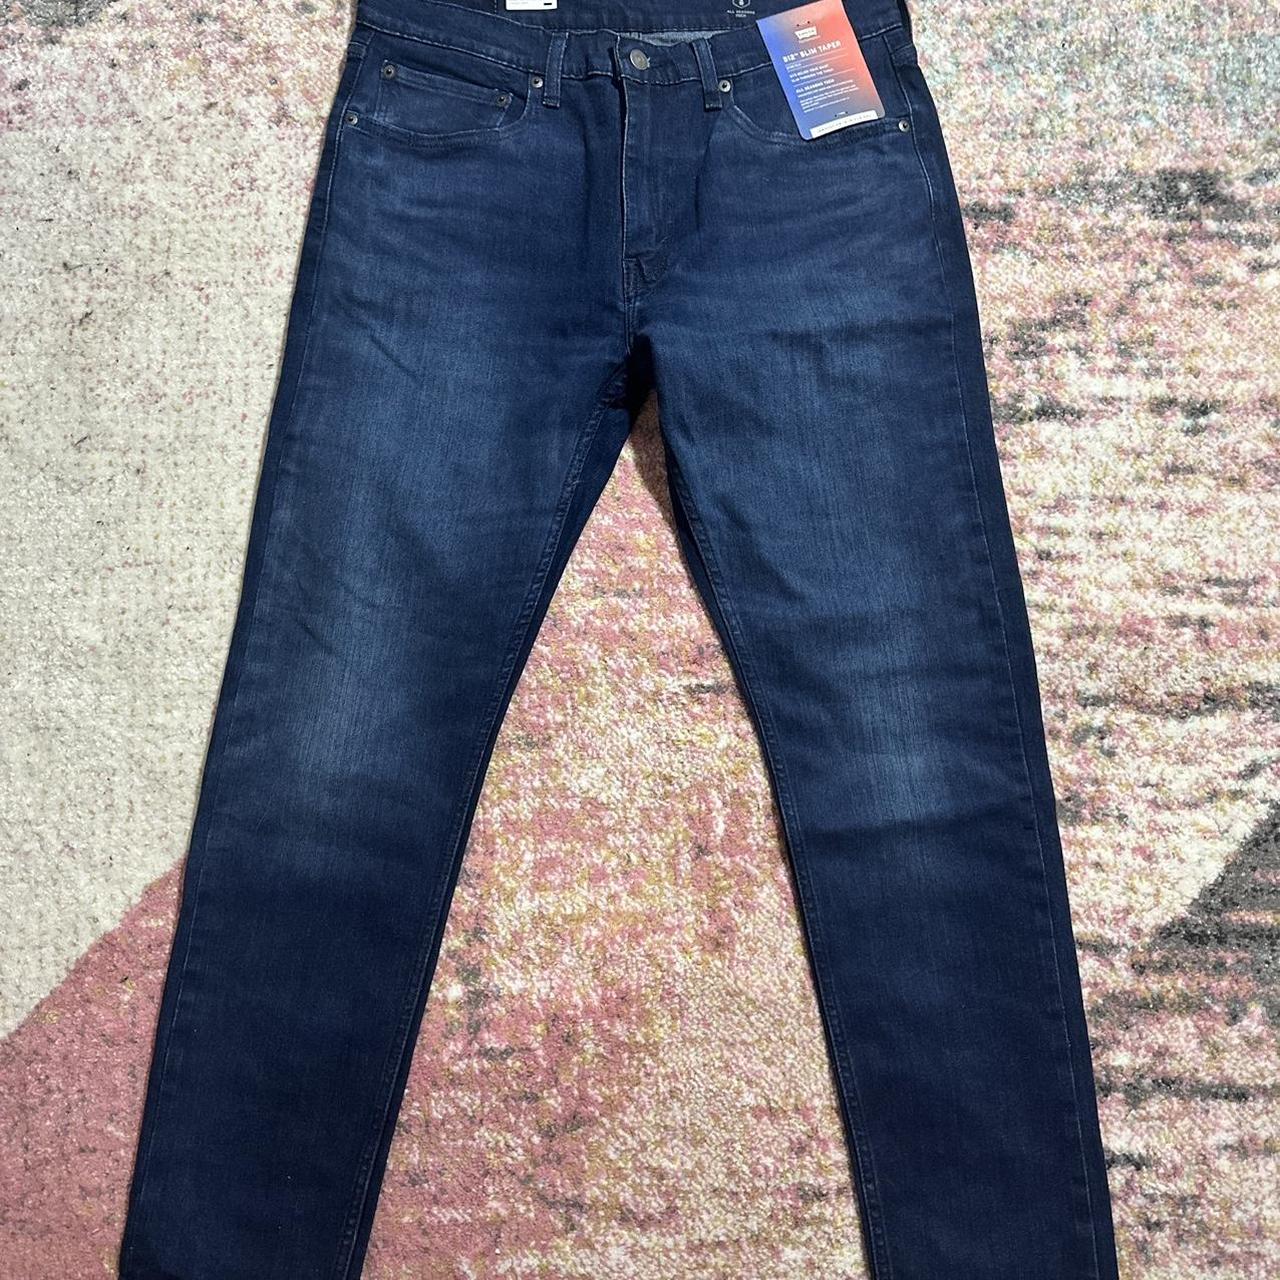 Levi’s jeans - Depop